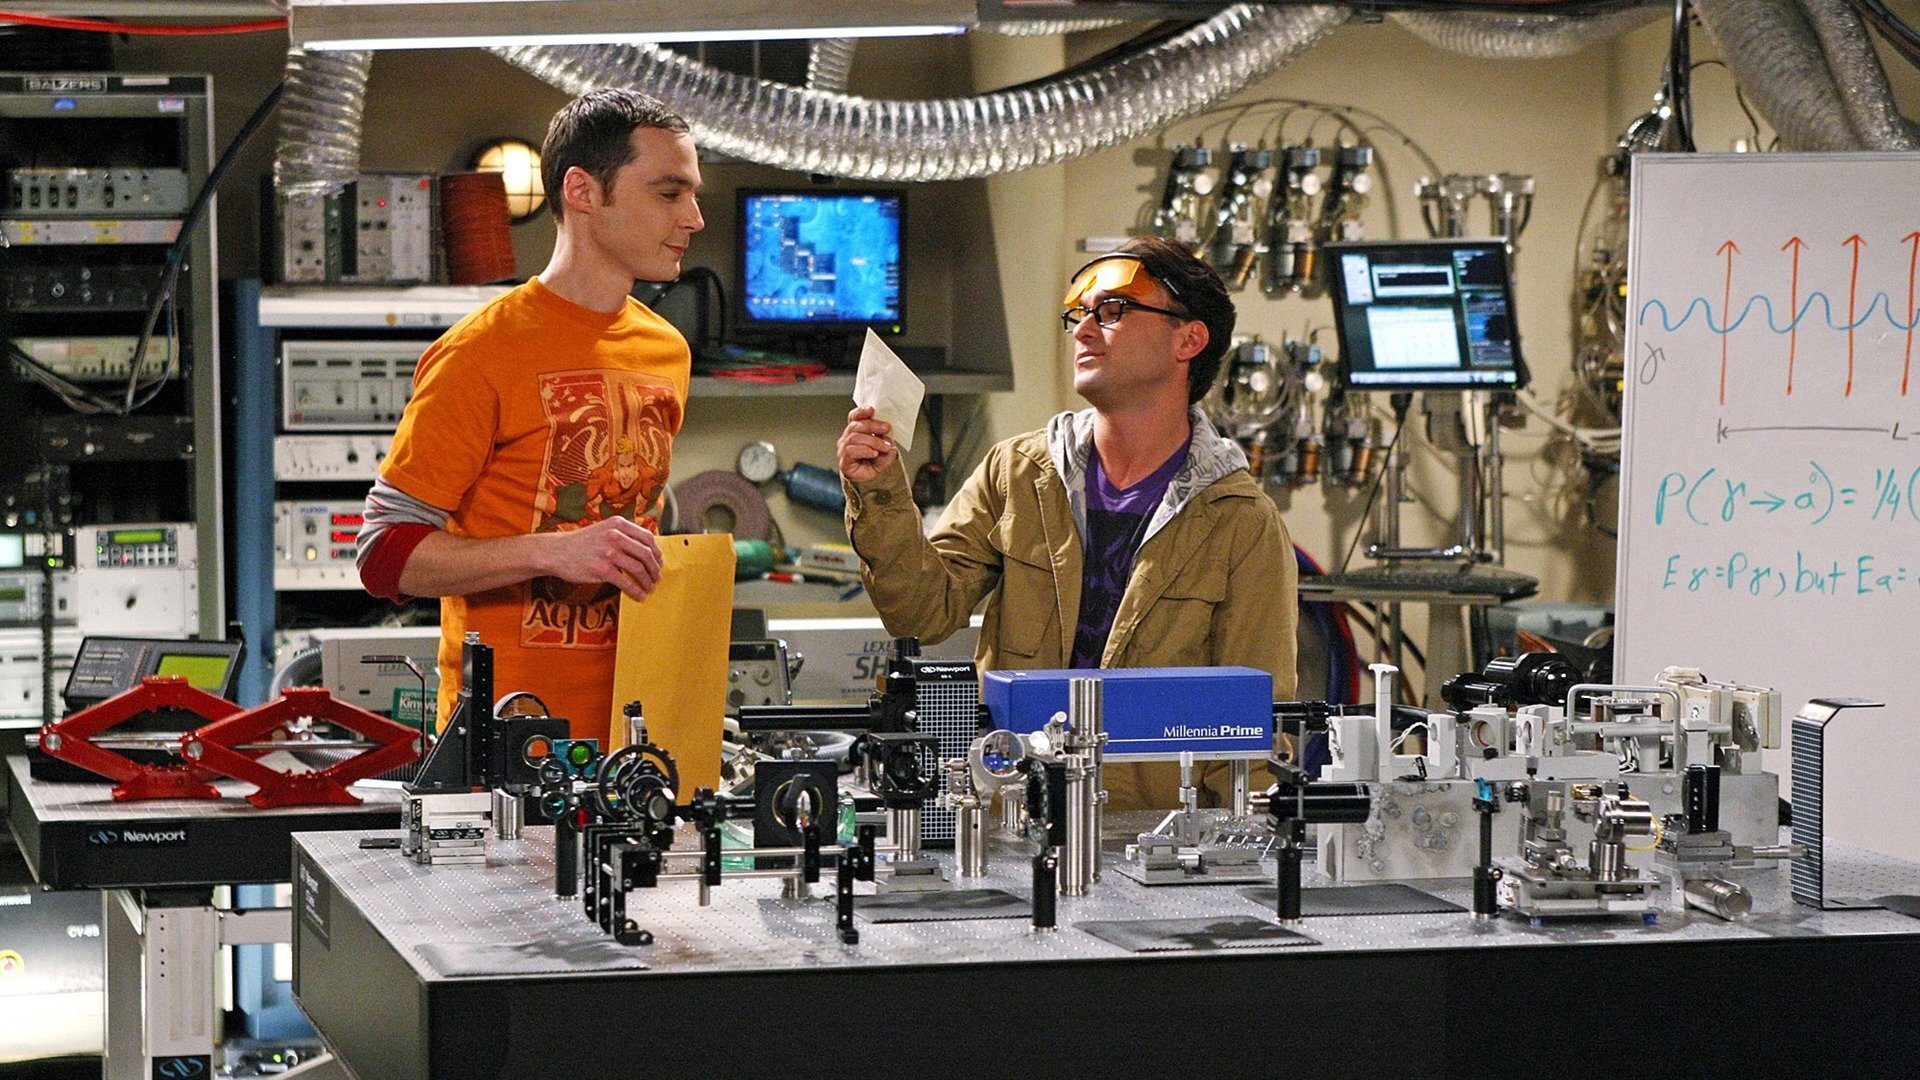 Sheldon och Penny dating i verkliga livetmga dating kanta